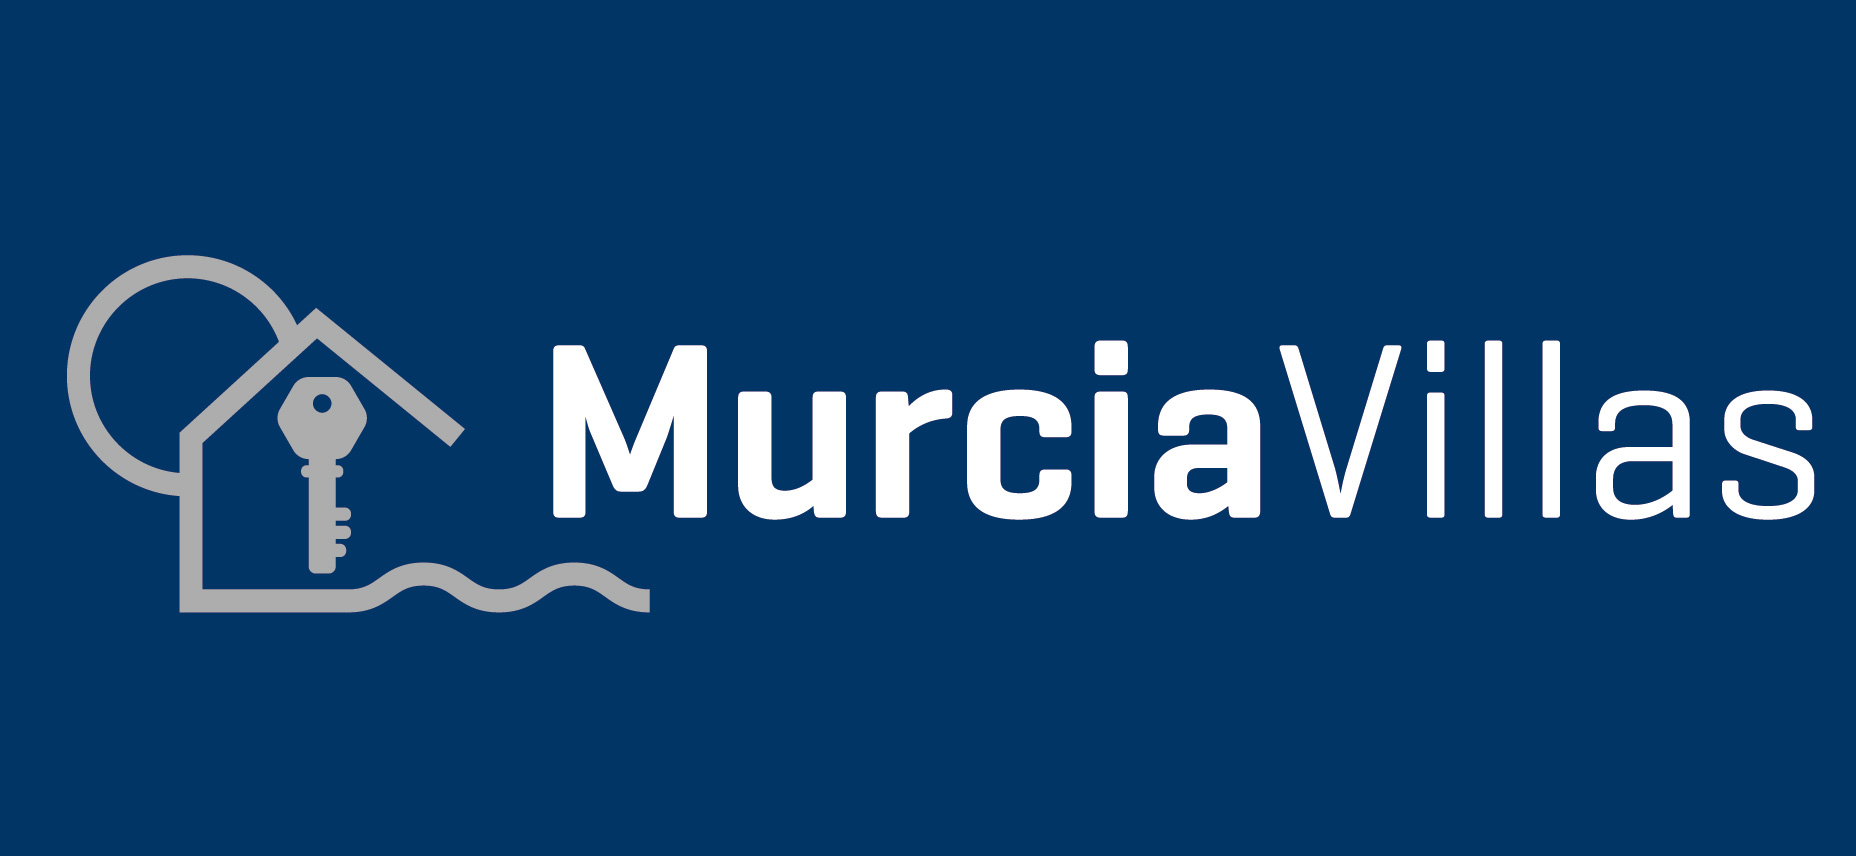 (c) Murciavillaslamanga.com